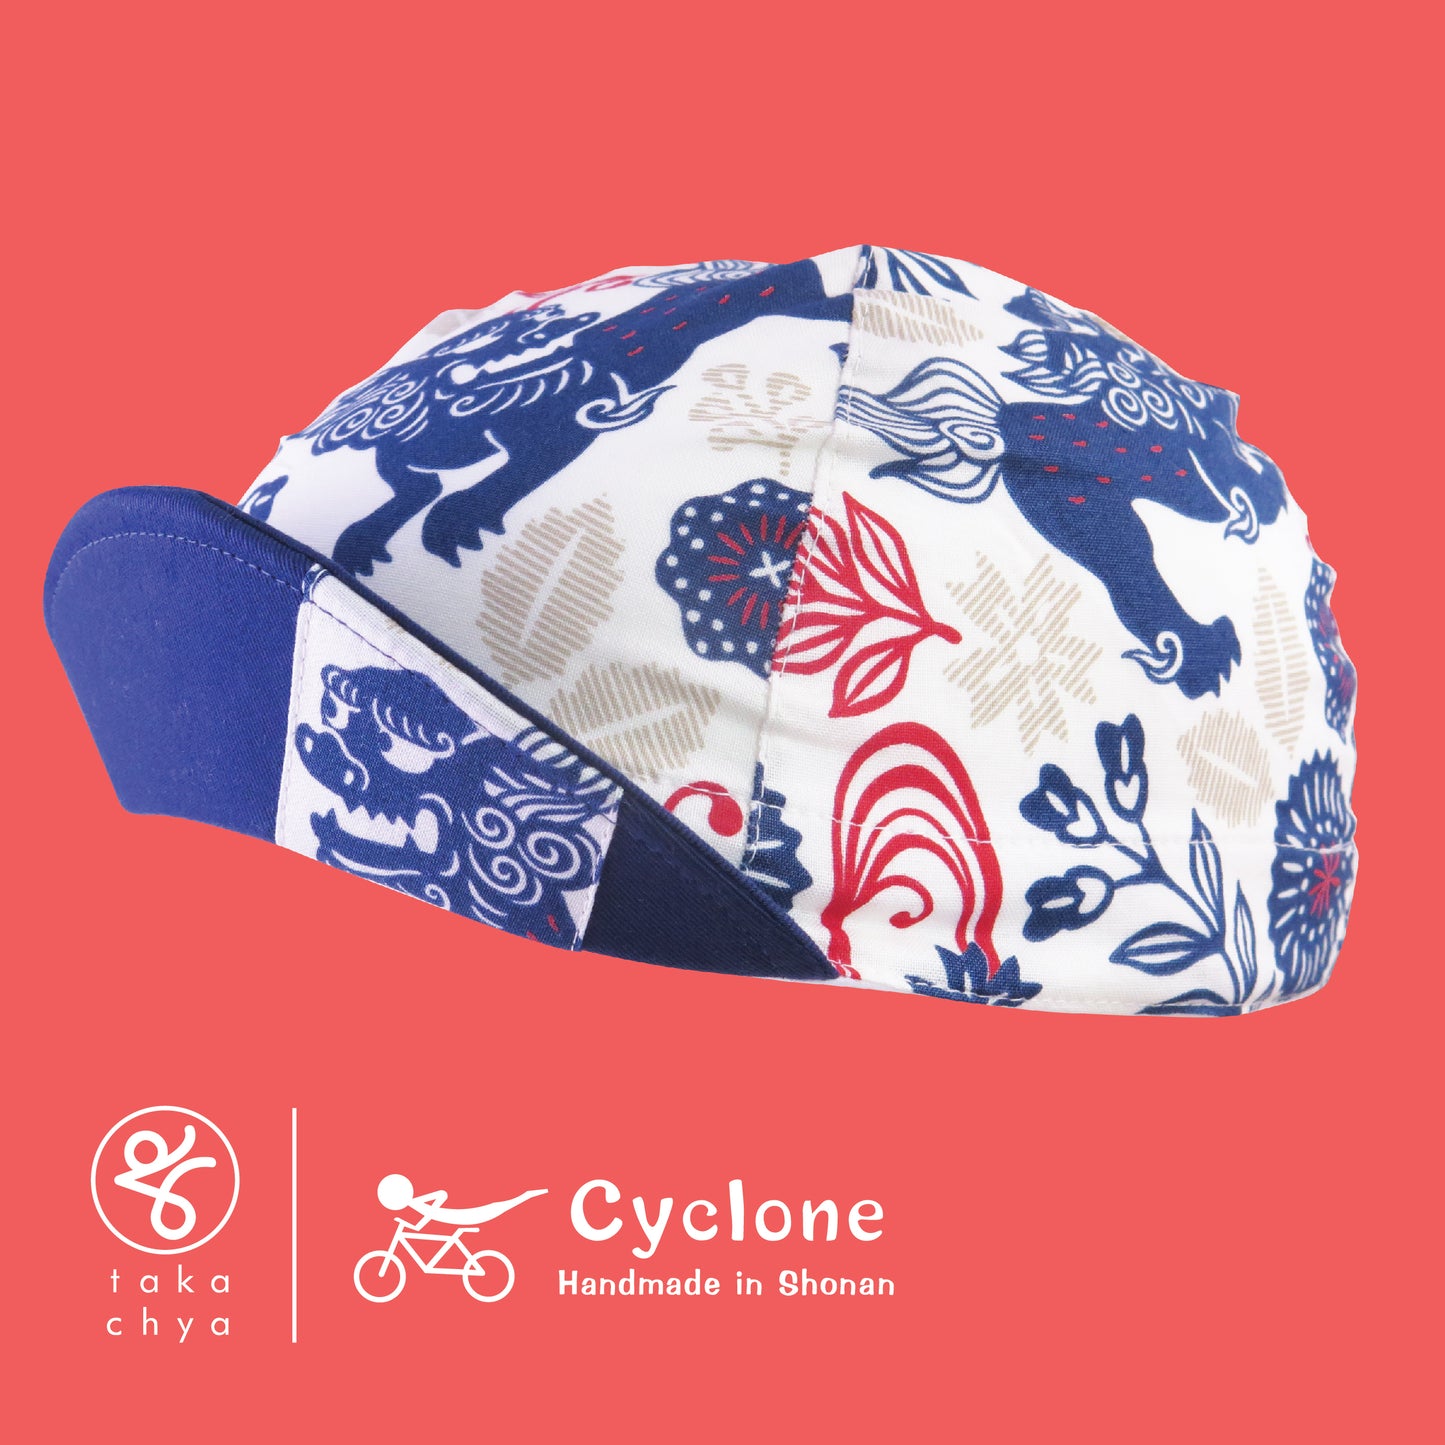 Shisa - Cyclone Chee Japanese Handmade Cycling Cap